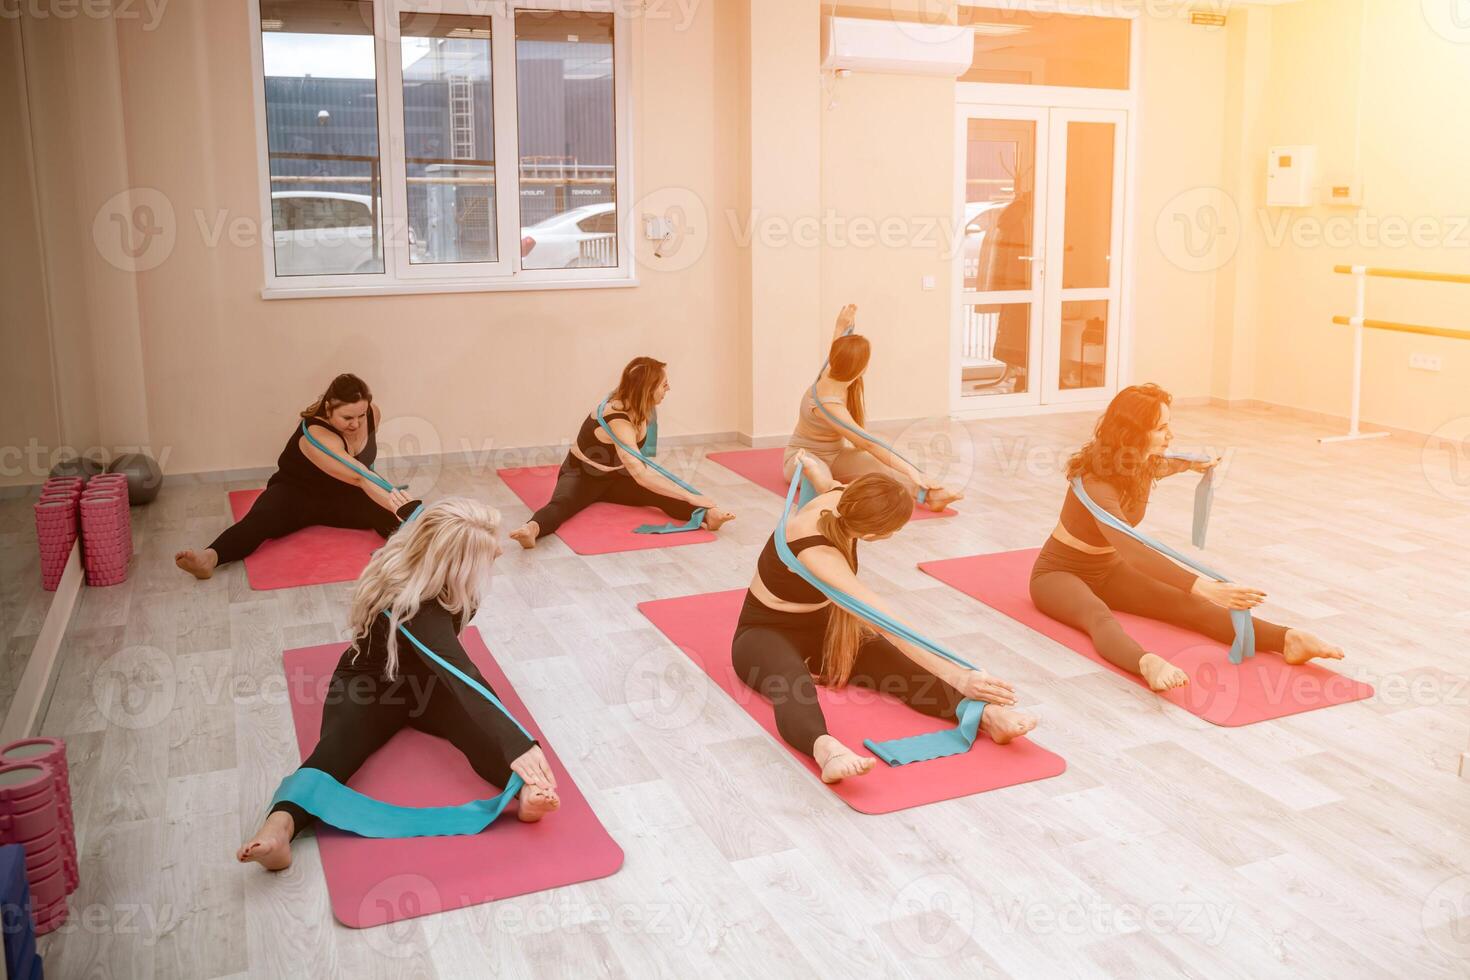 uma grupo do seis Atlético mulheres fazendo pilates ou ioga em Rosa tapetes dentro frente do uma janela dentro uma bege loft estúdio interior. trabalho em equipe, Boa humor e saudável estilo de vida conceito. foto